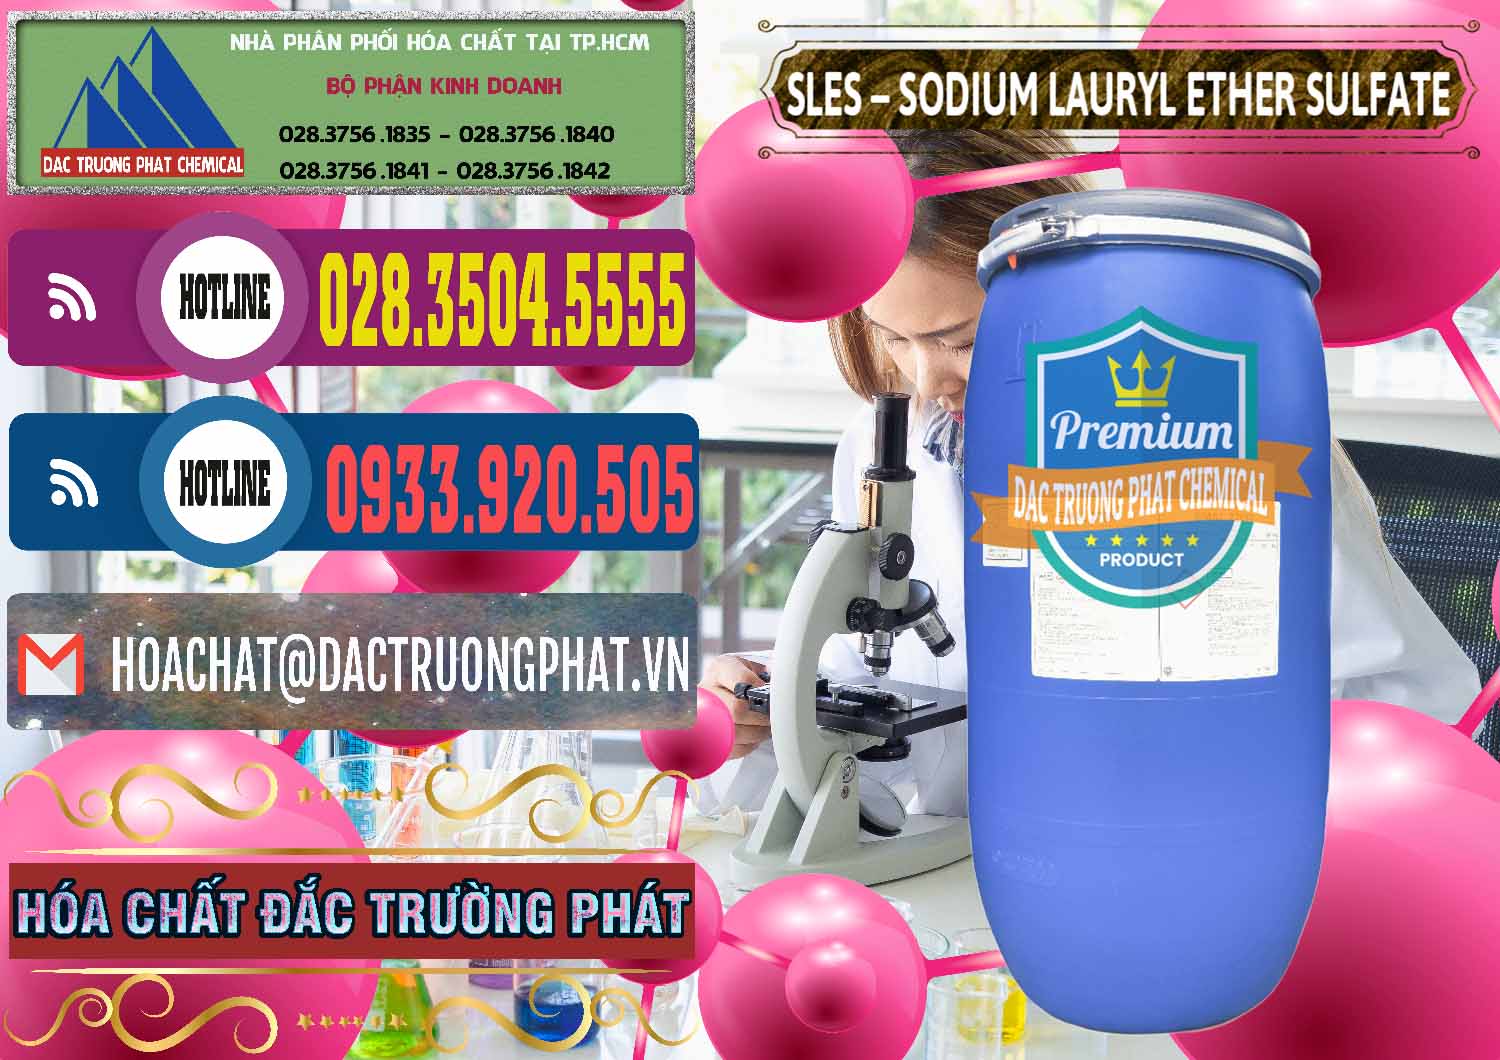 Cty chuyên phân phối & bán Chất Tạo Bọt Sles - Sodium Lauryl Ether Sulphate Kao Indonesia - 0046 - Công ty chuyên bán _ phân phối hóa chất tại TP.HCM - muabanhoachat.com.vn